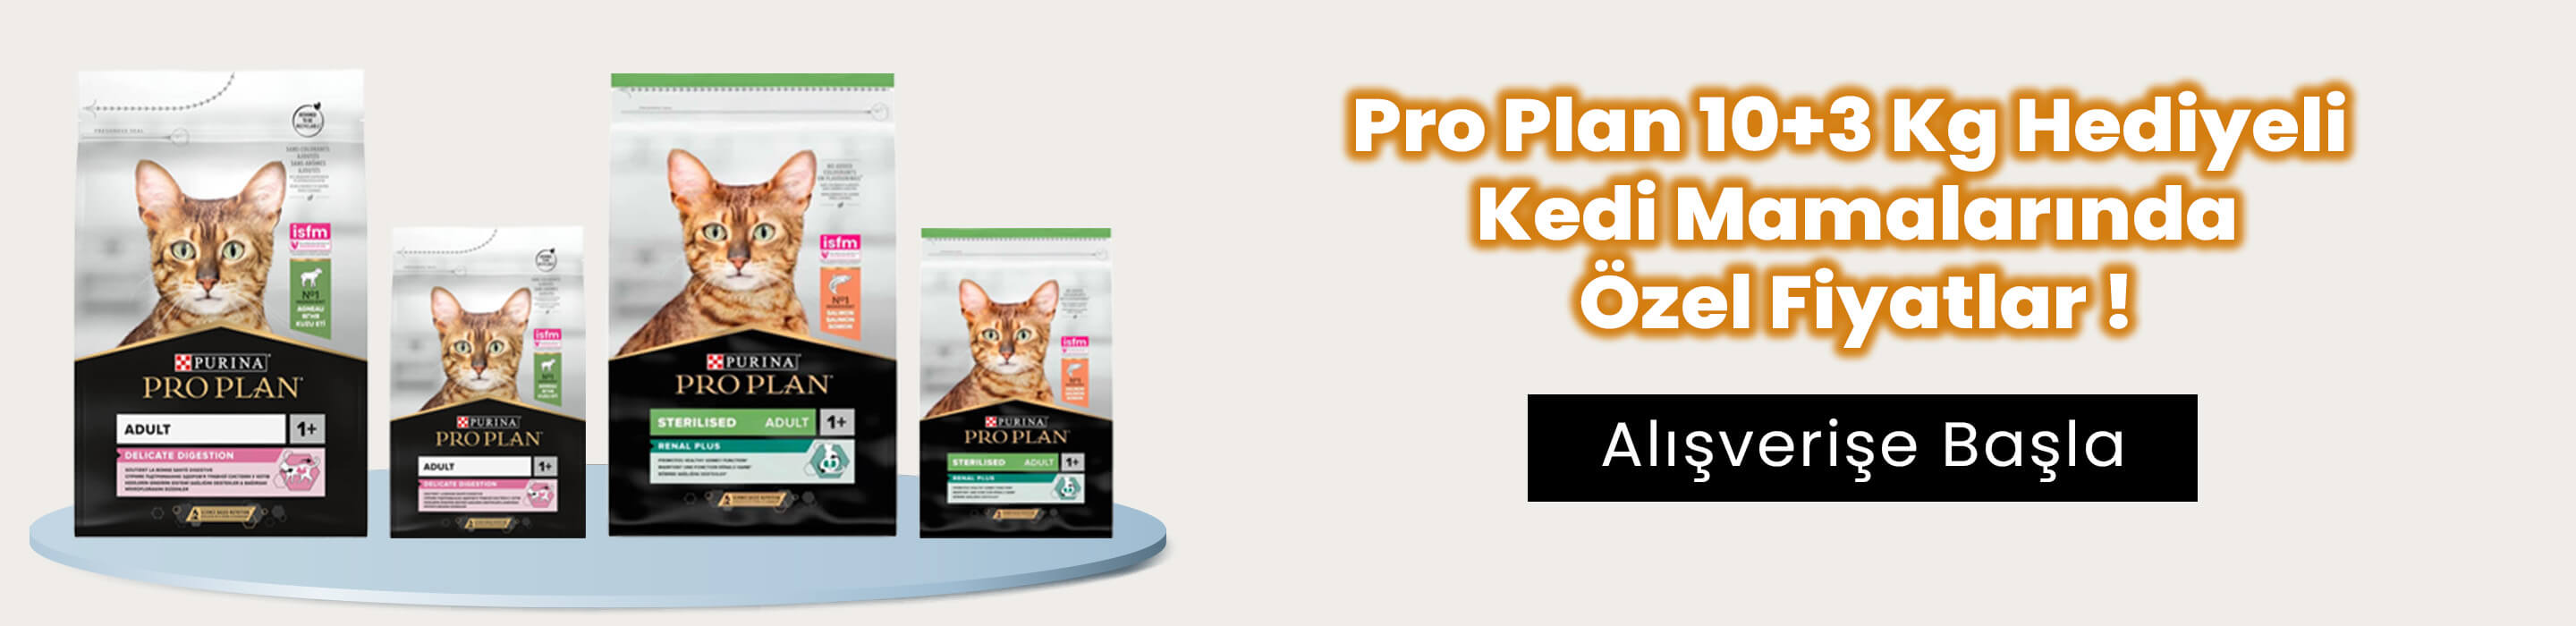 Pro Plan 10+3 Kg Hediyeli Kedi Mamaları Süper Fiyatlar!